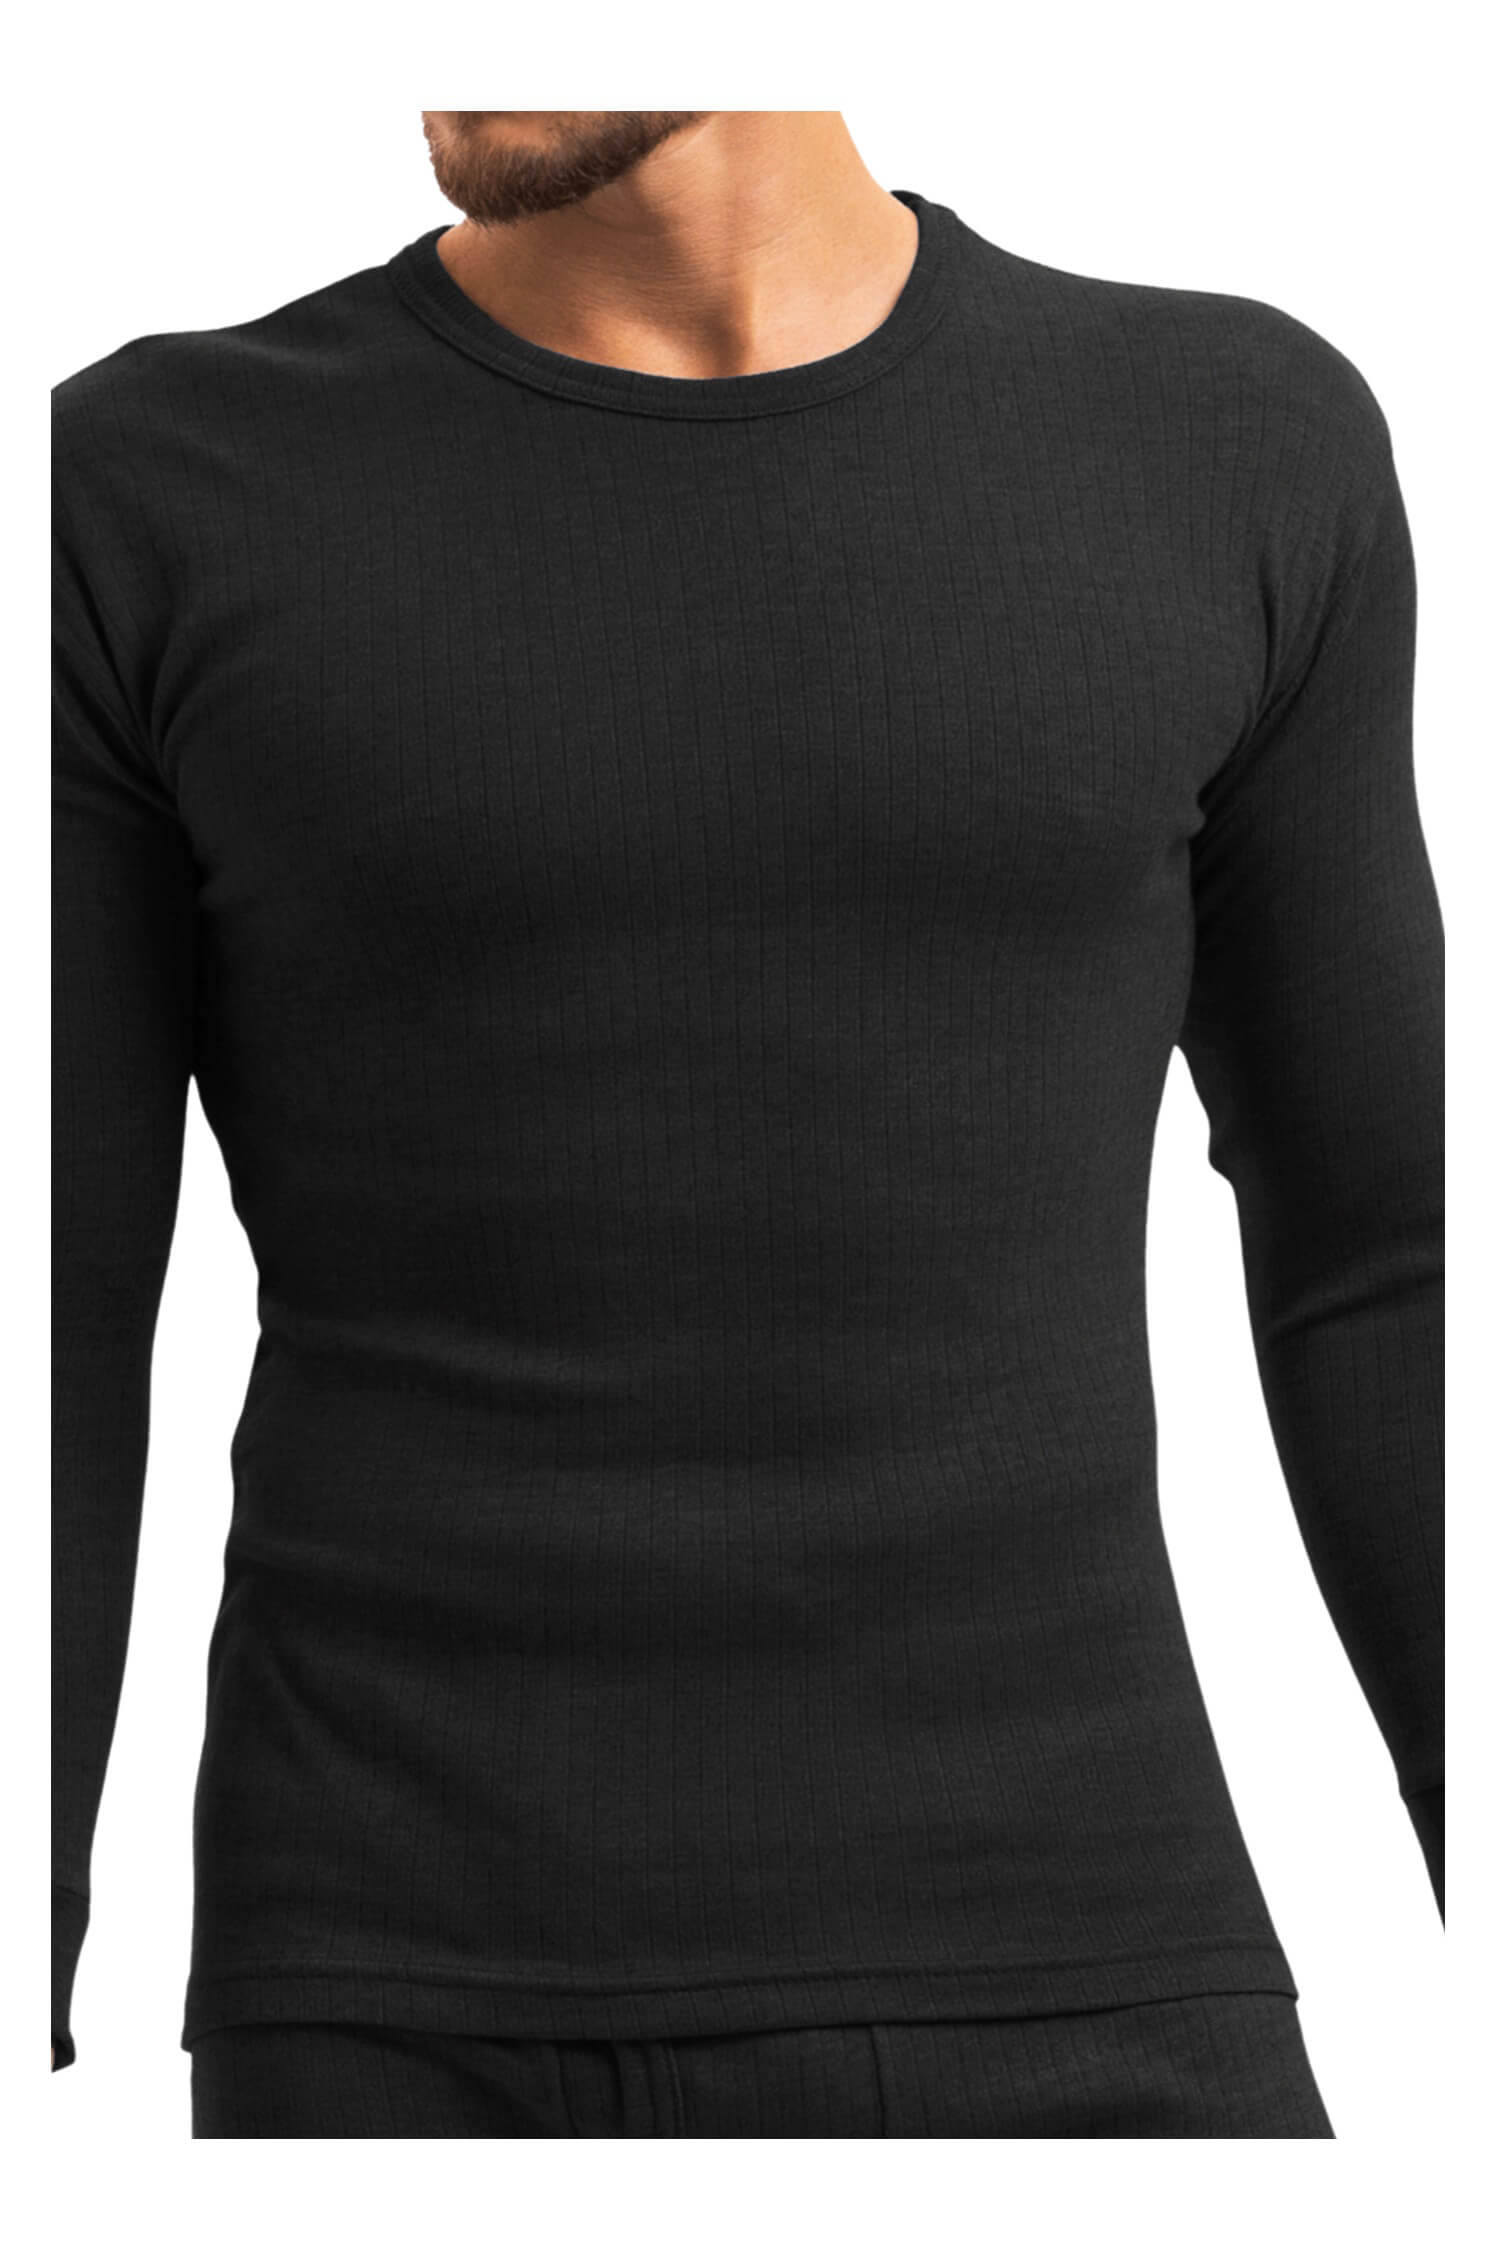 Braňo pánské thermo tričko 256 L černá